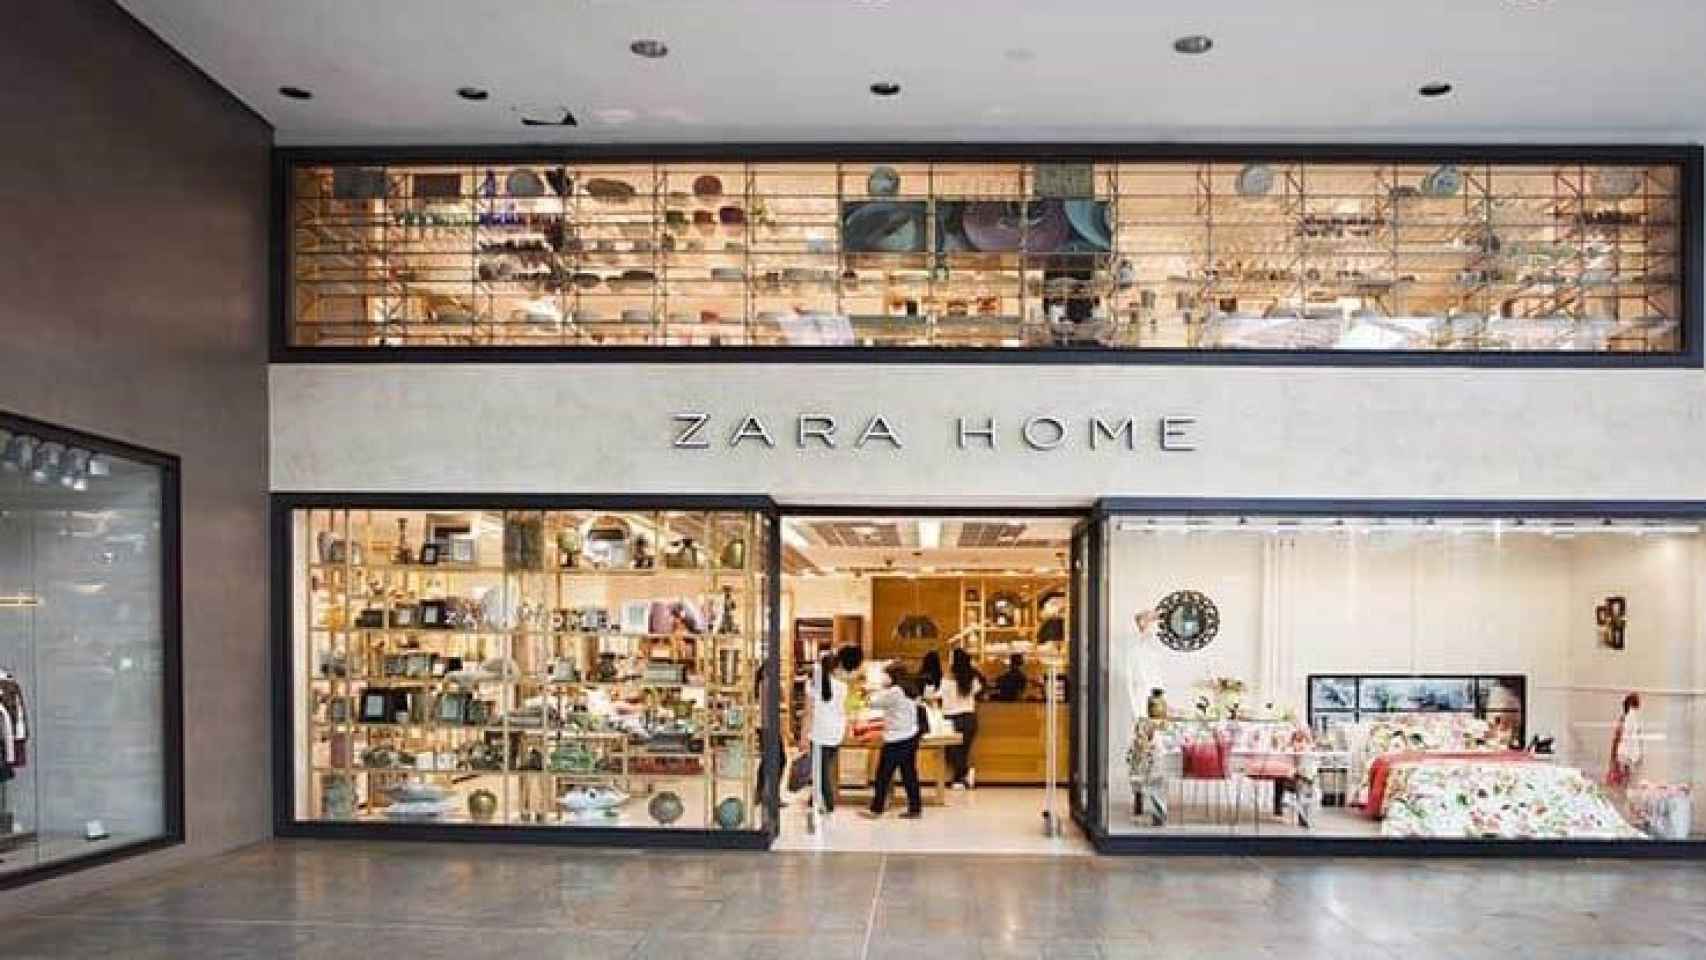 La locura por la nueva inalámbrica Zara Home tirada de precio: cuesta 39,99 euros